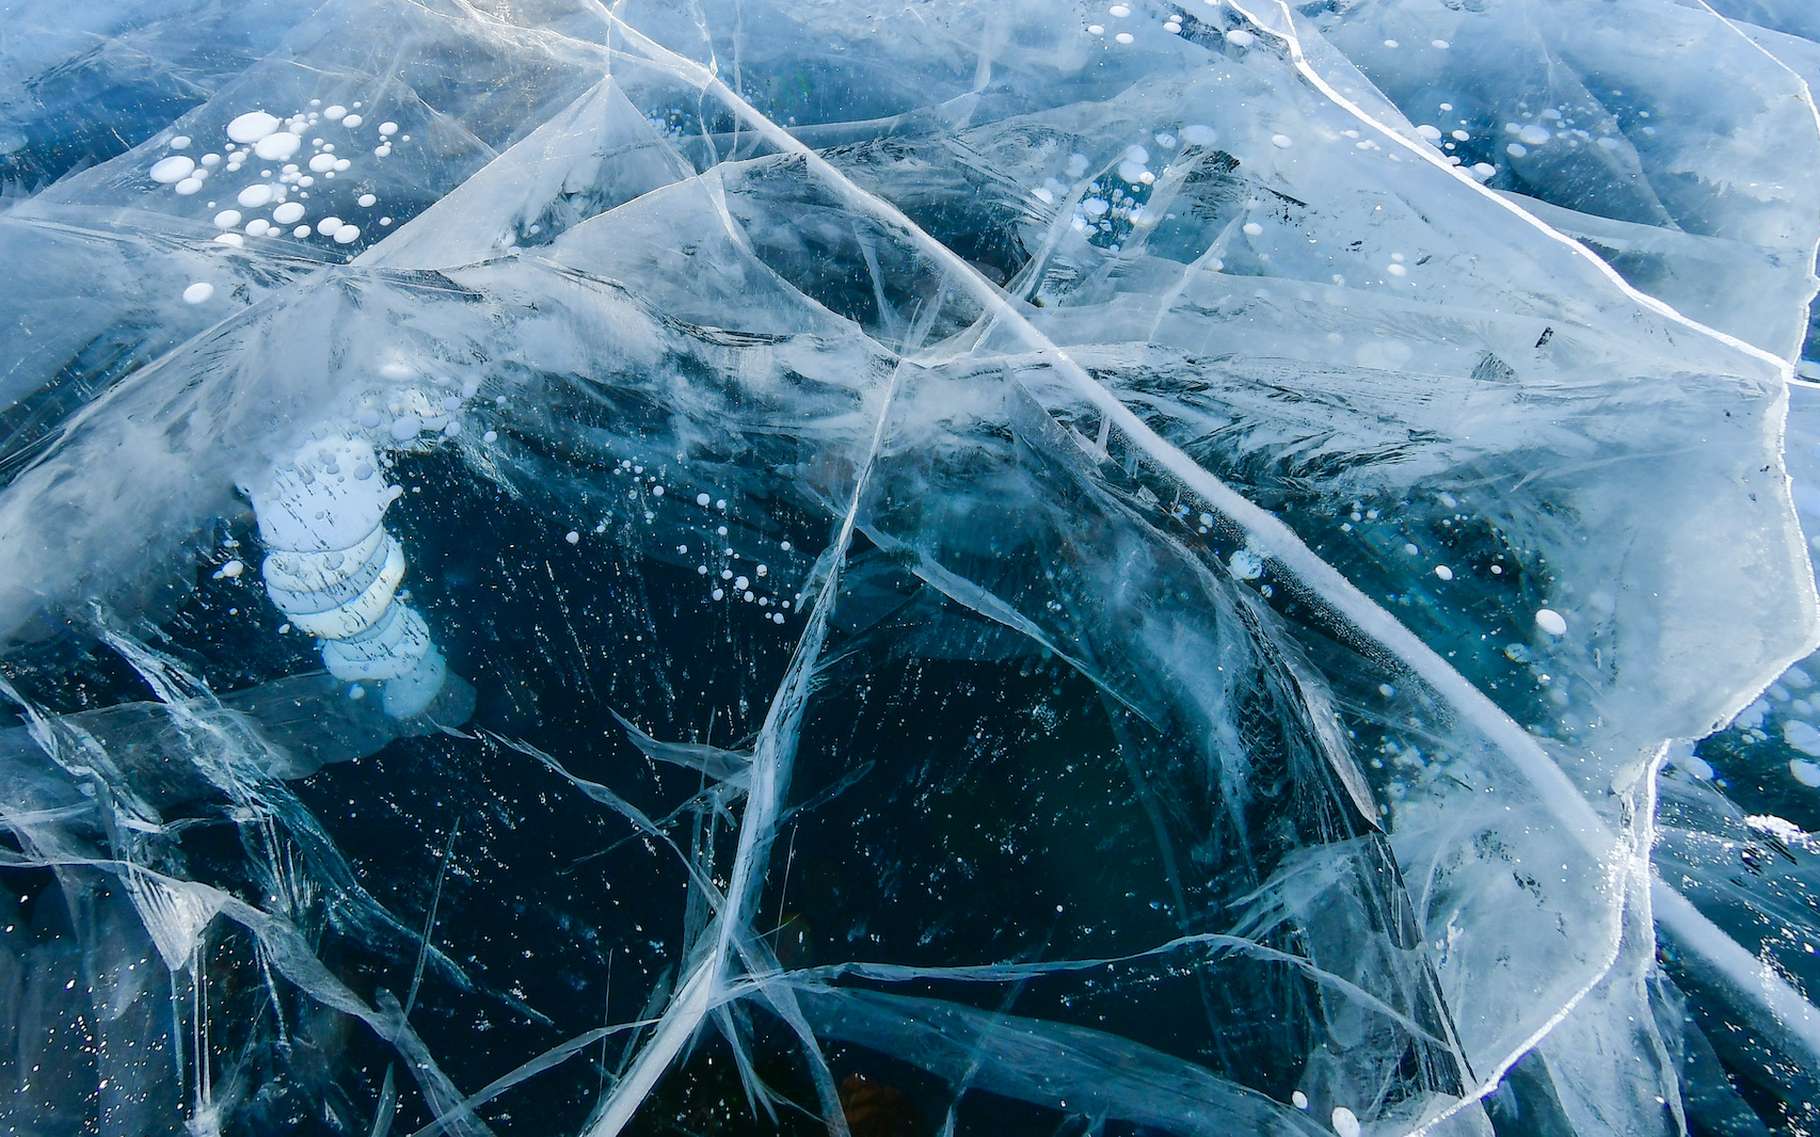 En hiver 2019, un lac a littéralement disparu de l’Antarctique. Il s’est écoulé par le fond, après avoir brisé la glace de la plateforme qui le soutenait, expliquent aujourd’hui des chercheurs de la Scripps Institution of Oceanography de l’université de Californie à San Diego (États-Unis). © prasitphoto, Adobe Stock